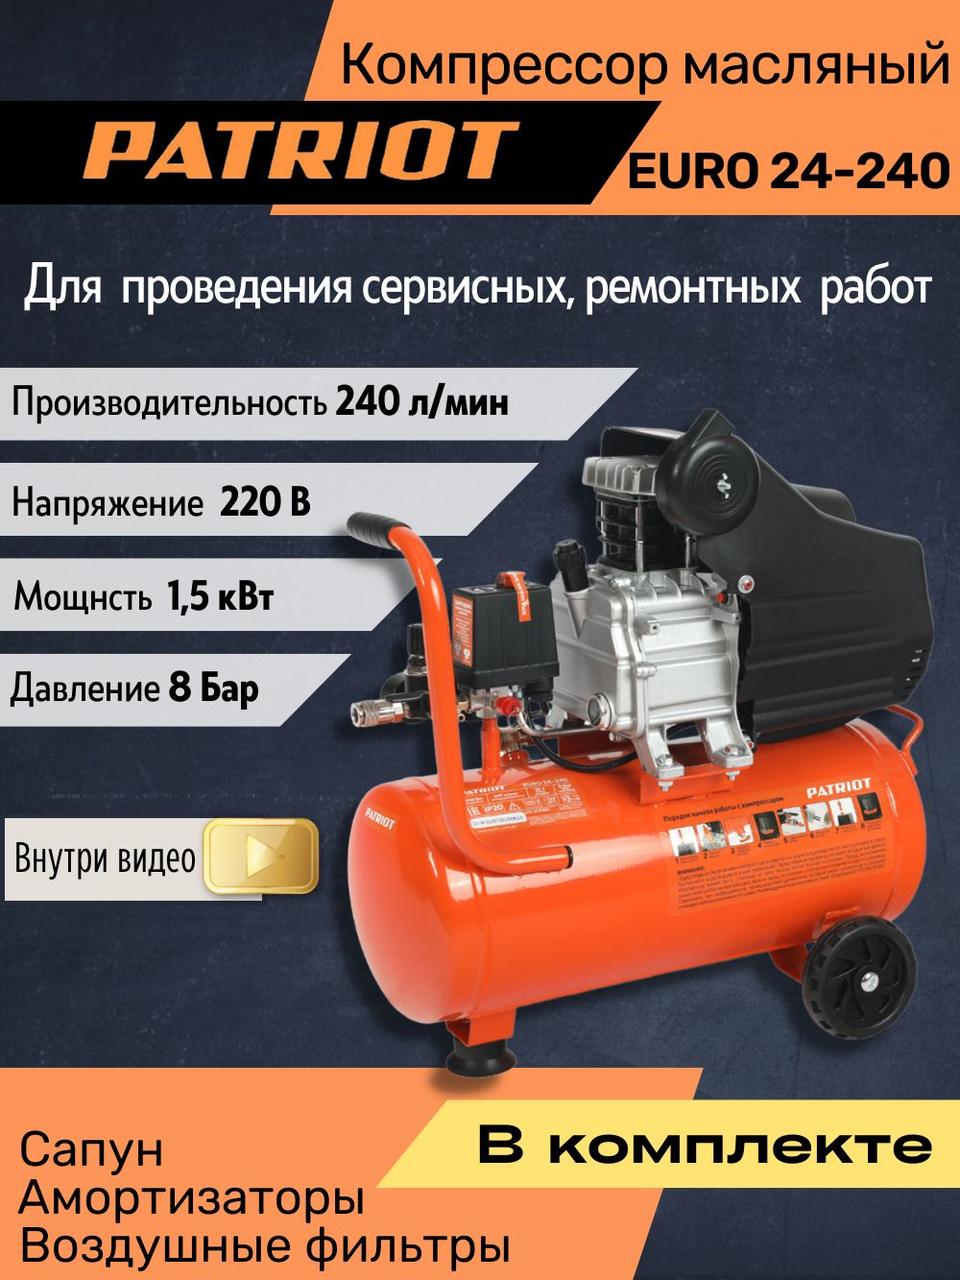 Компрессор поршневой масляный PATRIOT EURO 24-240 525306365 (1,5 кВт; 24л; 240 л/мин; 8 бар; 220В)